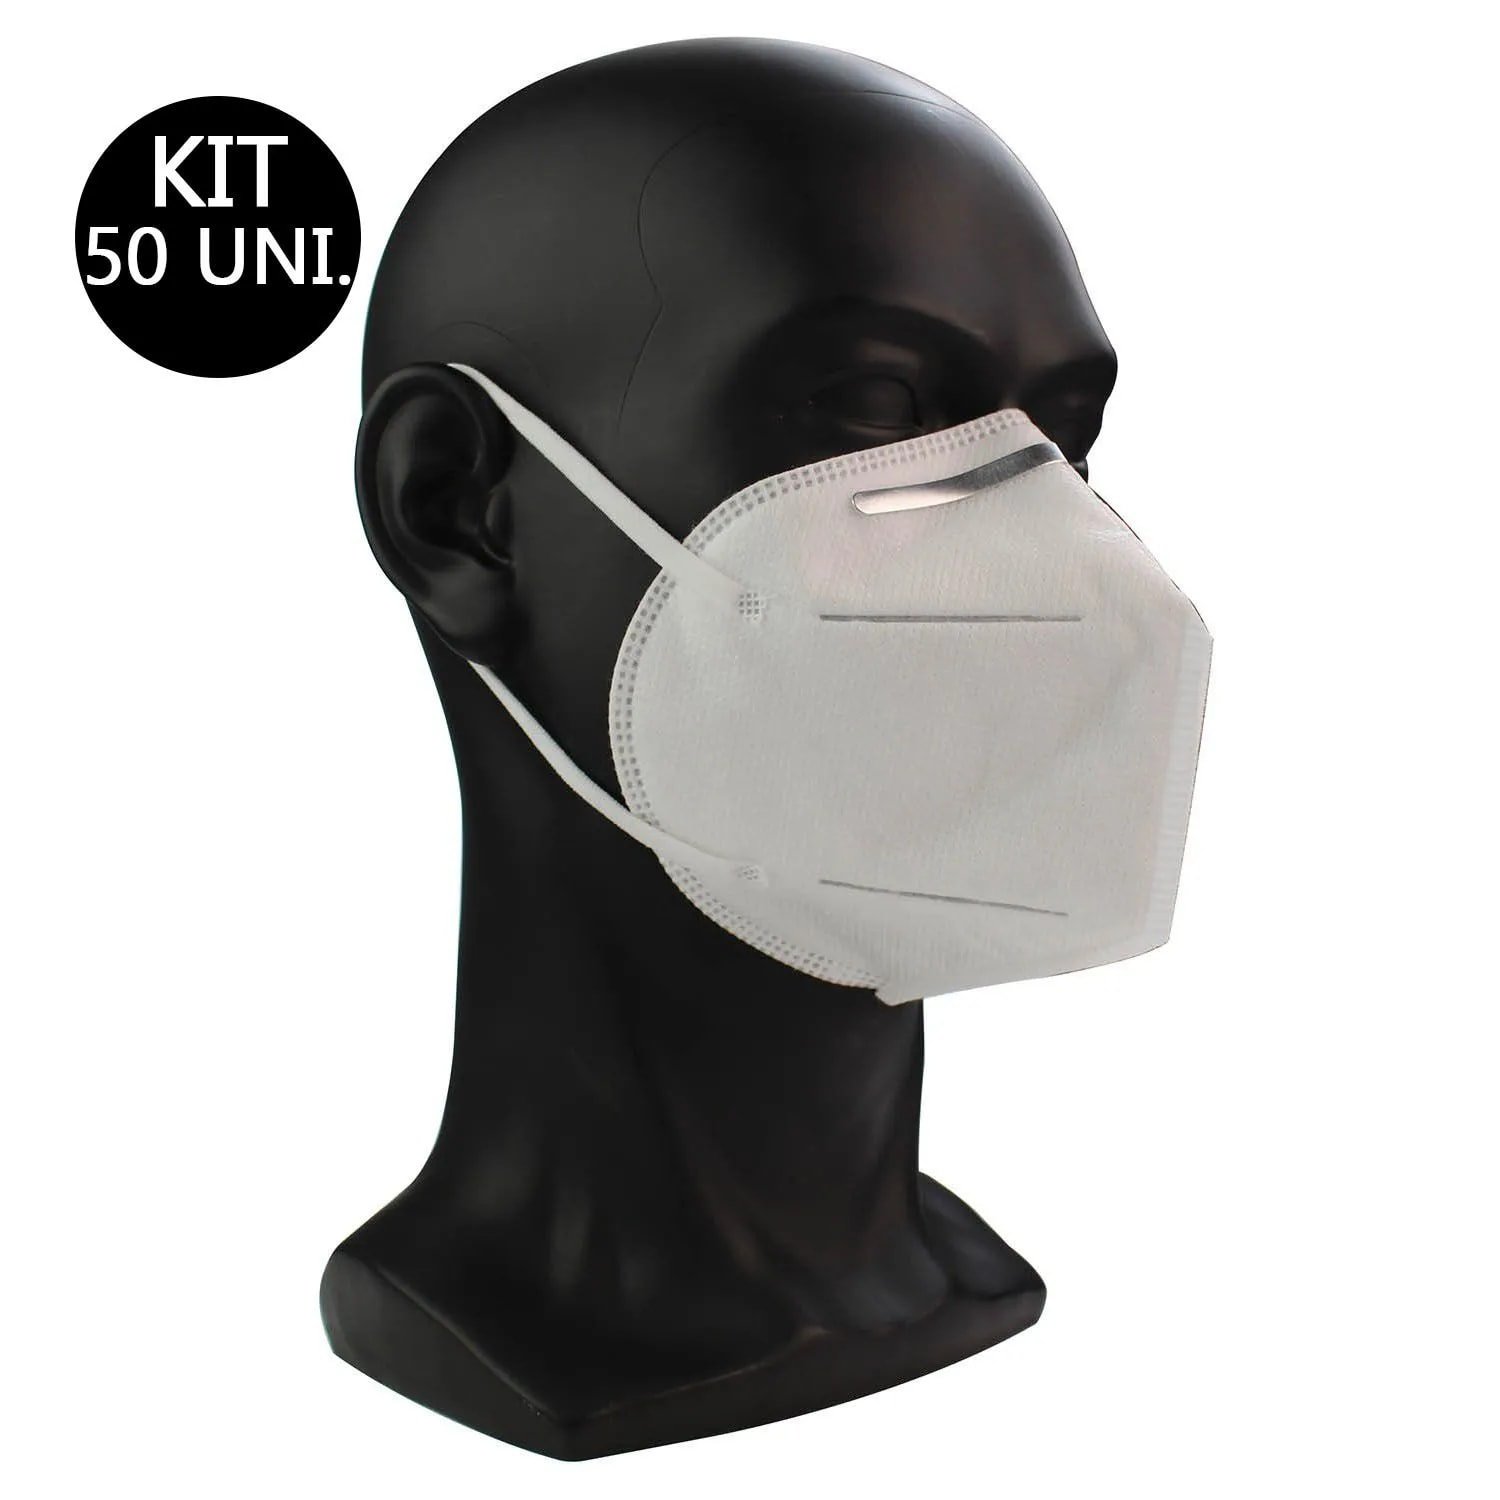 Mascara Respiratoria KN95 Kit 50 Uni Proteção PFF2 Respirador EPI N95 Profissional - 2